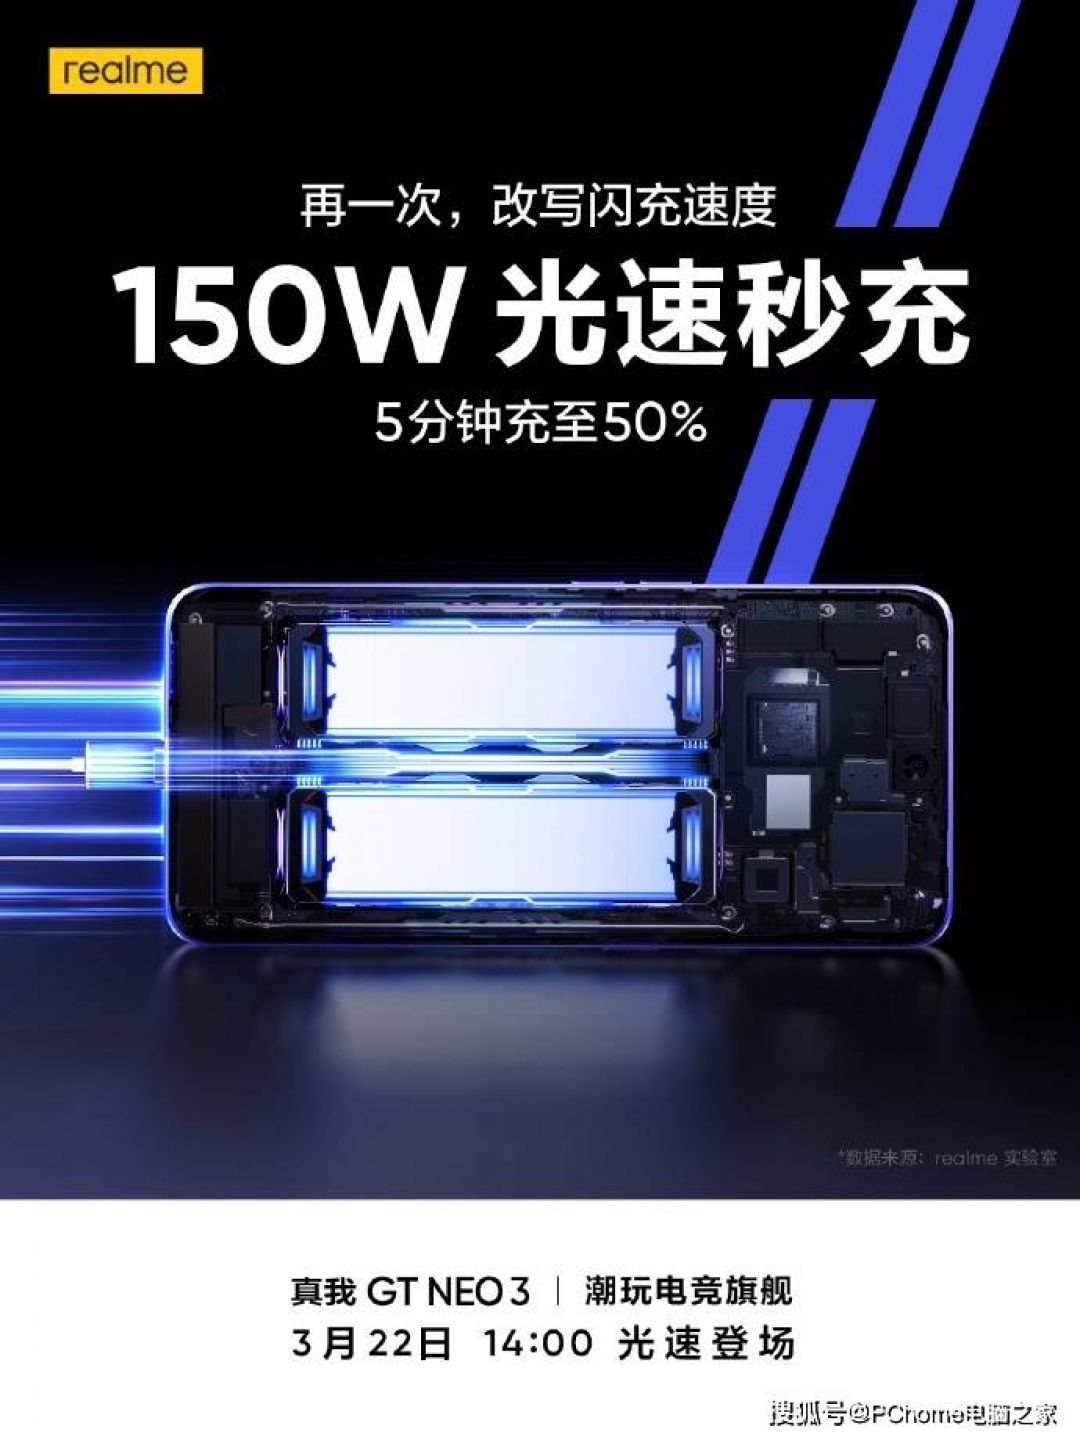 Ponsel Realme GT Neo3 Isi Baterai 50% dalam 5 Menit-Image-1